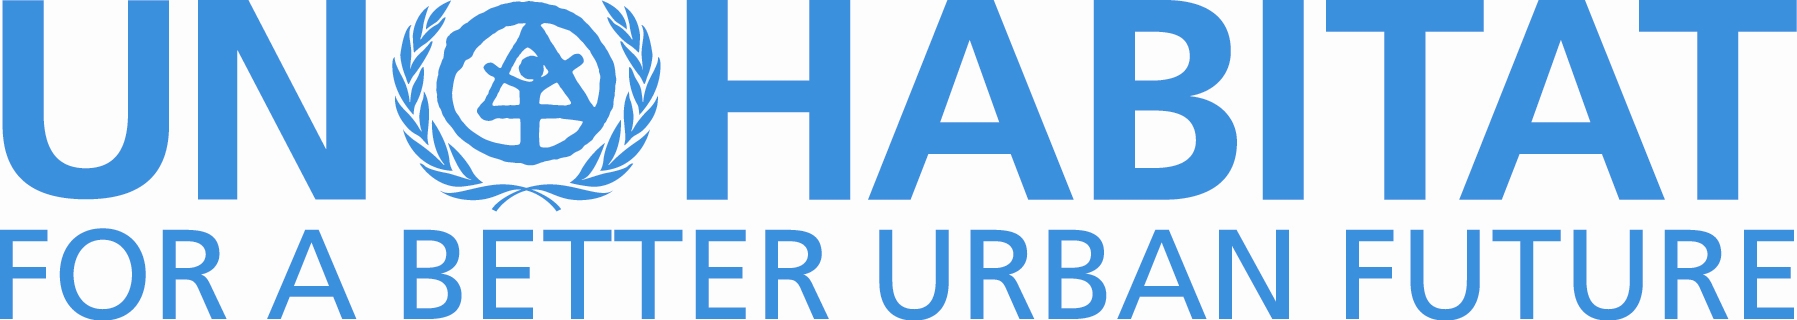 UN-Habitat-logo.jpg